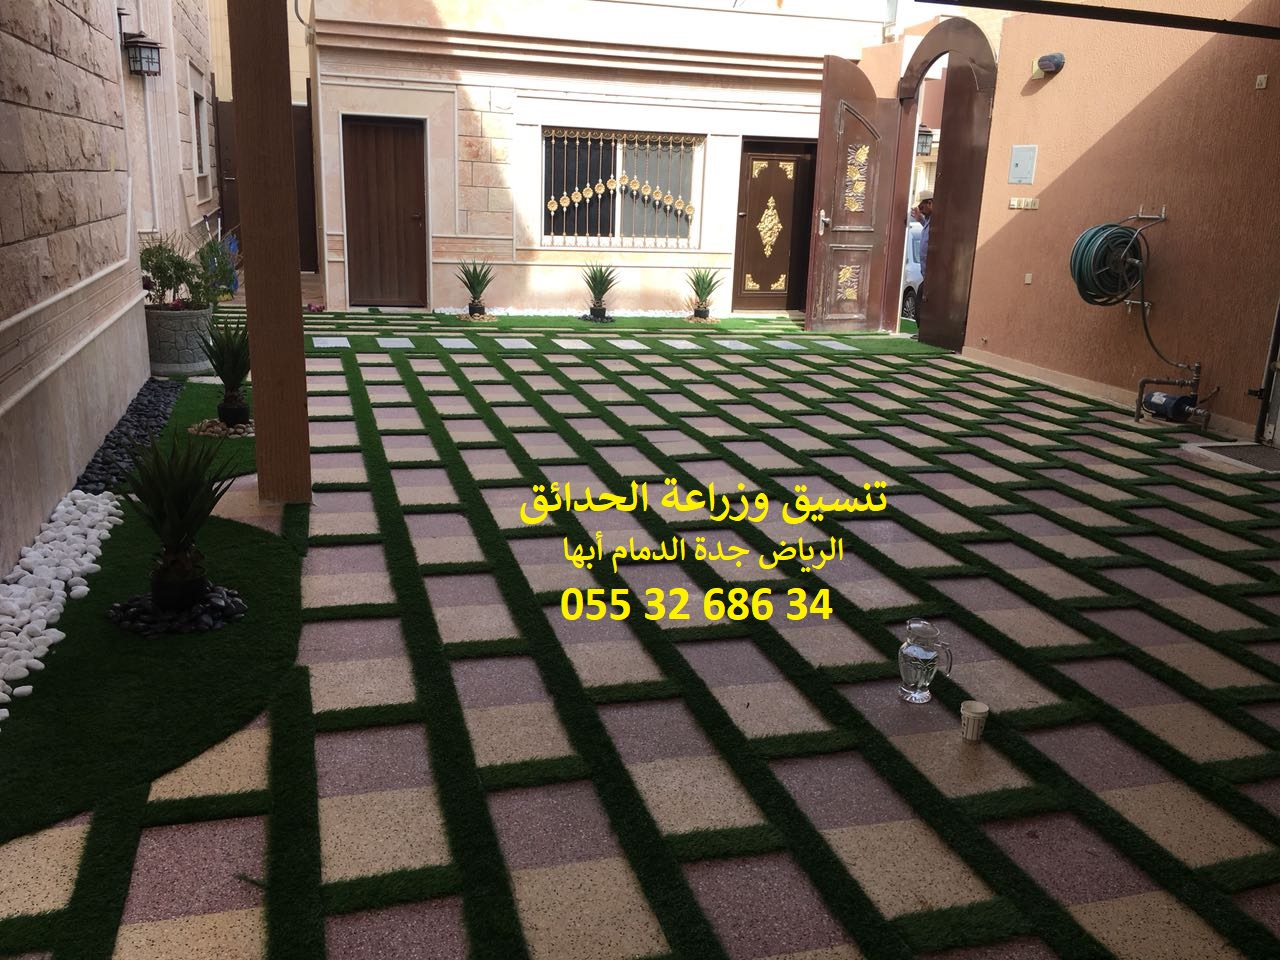 شركة تنسيق حدائق عشب صناعي عشب جداري الرياض جدة الدمام 0553268634 P_11435ct9e10